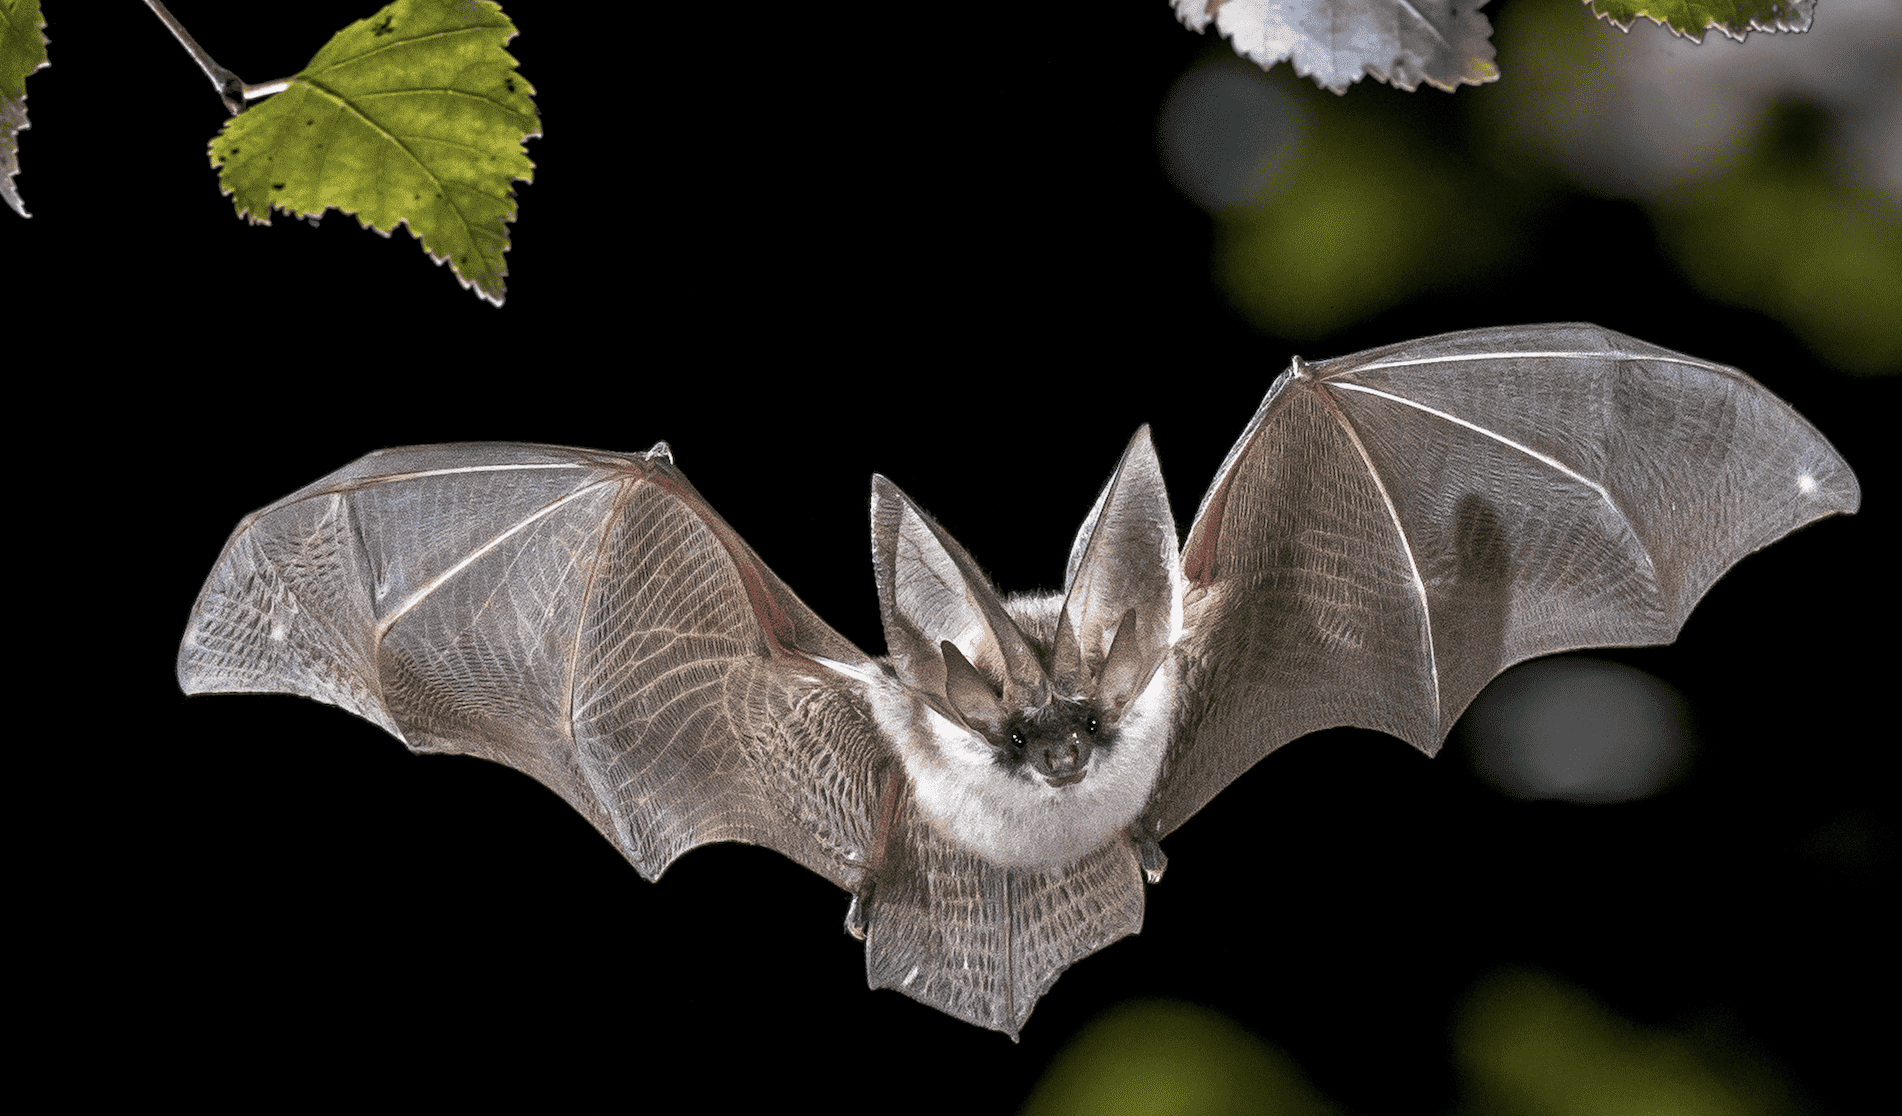 الخفاش بريء و منشأ فيروس كورونا كان مختلفا - بحسب اعتقاد المدير السابق ل CDC  الأمريكية